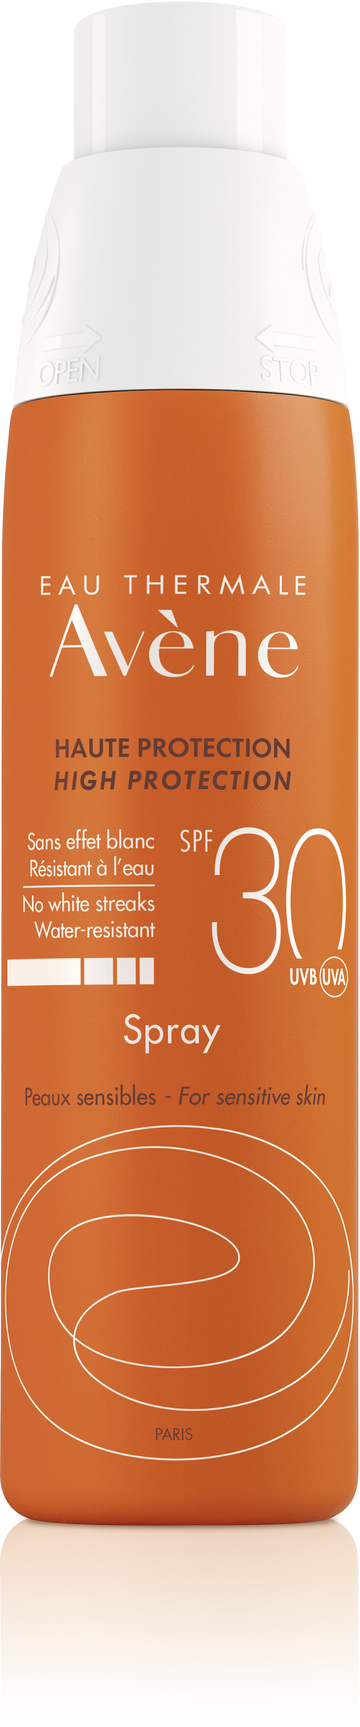 Avène Spray SPF 30 